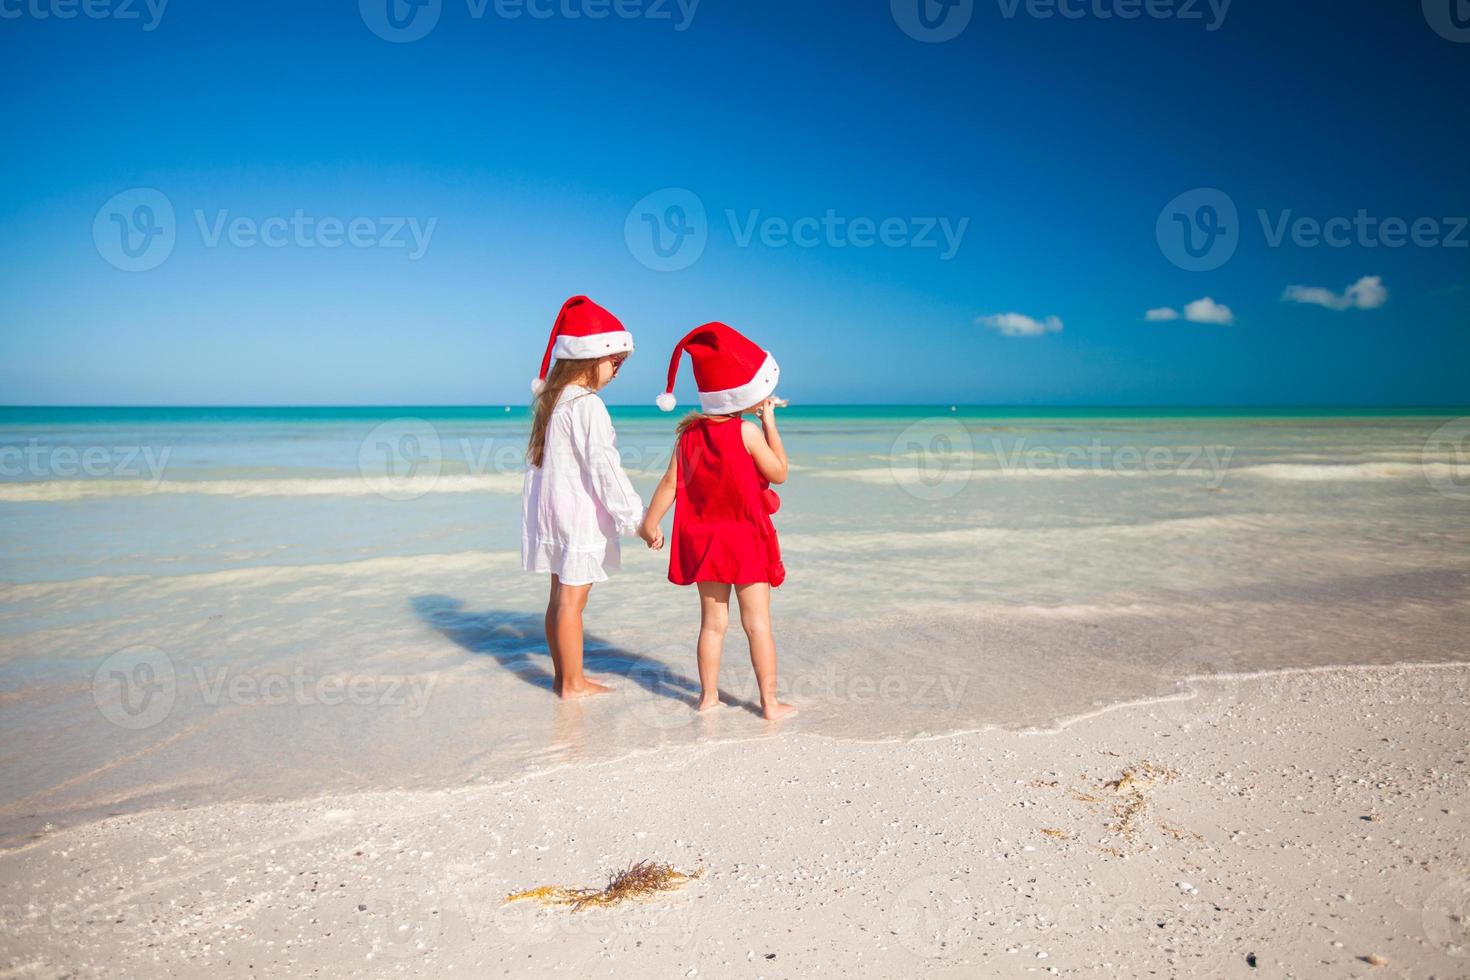 Rückansicht von kleinen süßen Mädchen in Weihnachtsmützen am exotischen Strand foto